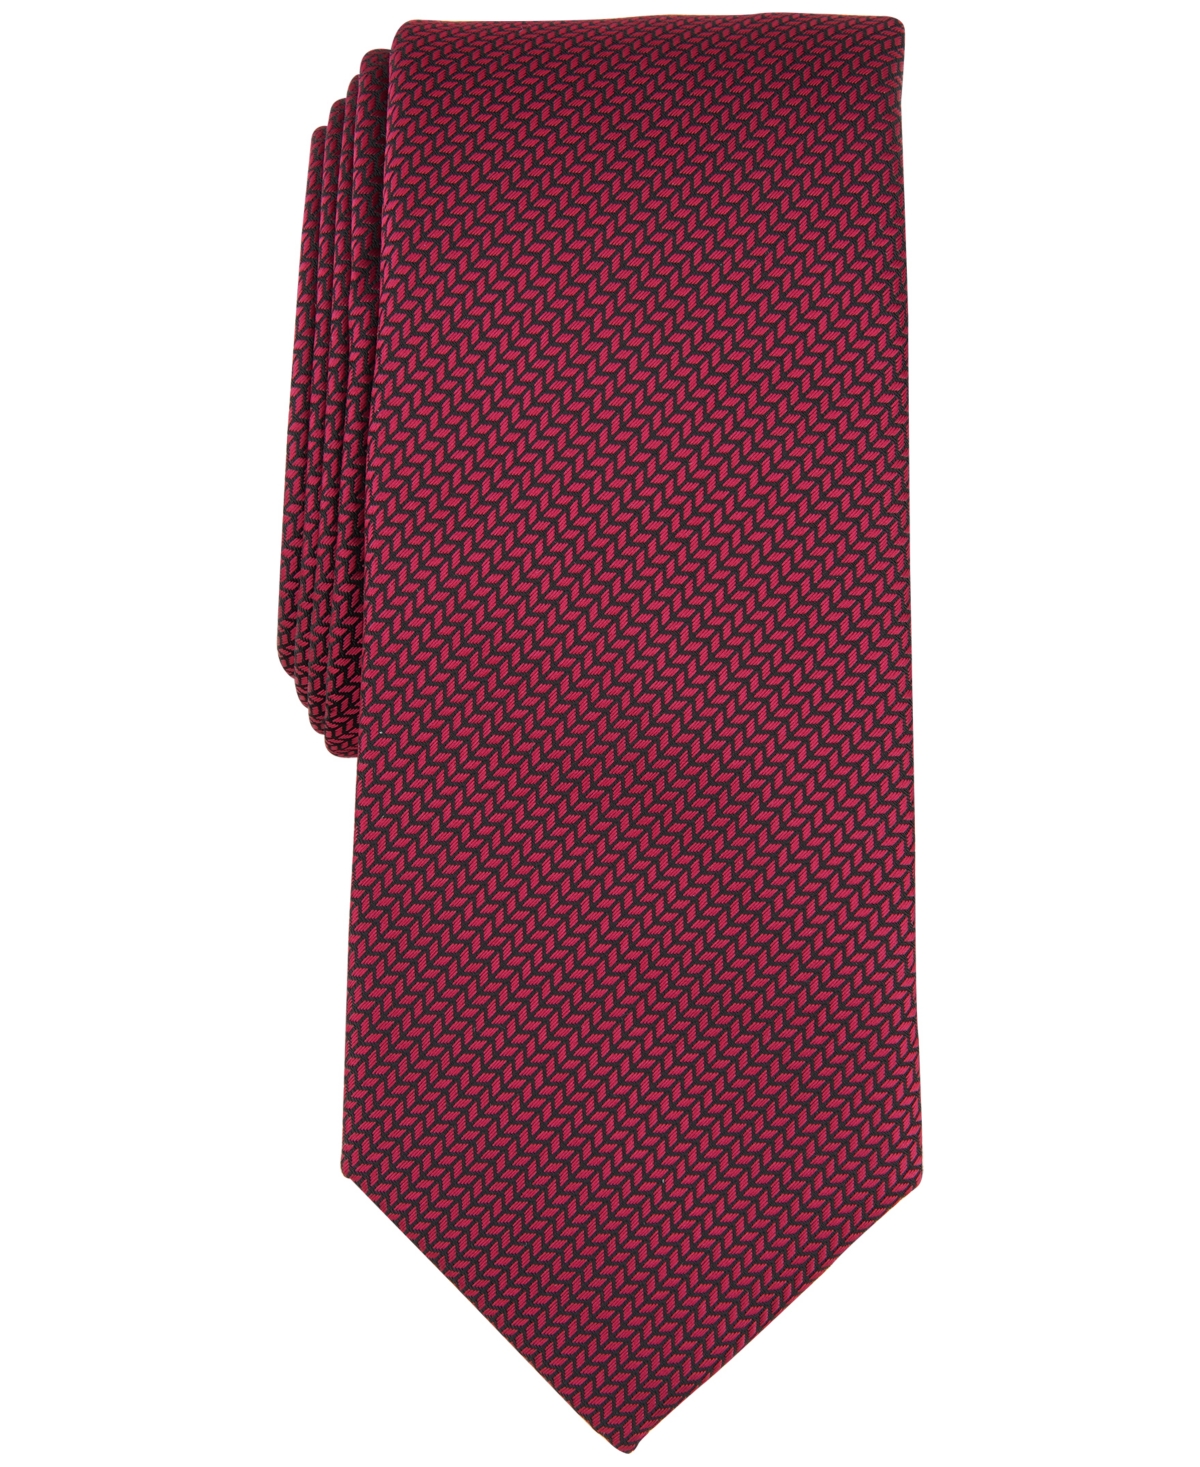 Men's Julian Textured Tie, Created for Macy's - Red